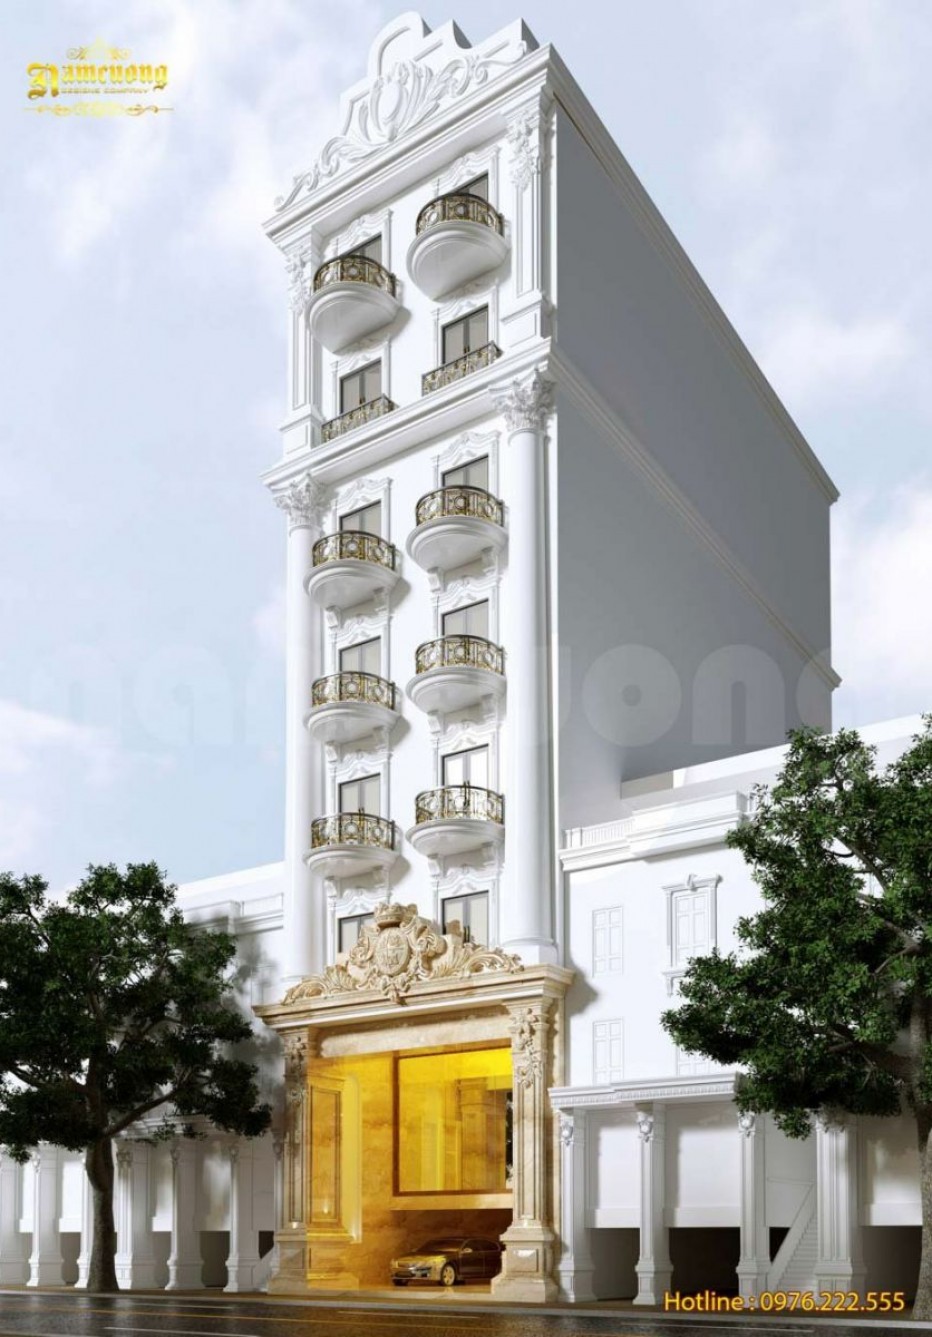 Đã mắt ngắm mẫu thiết kế khách sạn mini 7 tầng tại Quảng Bình